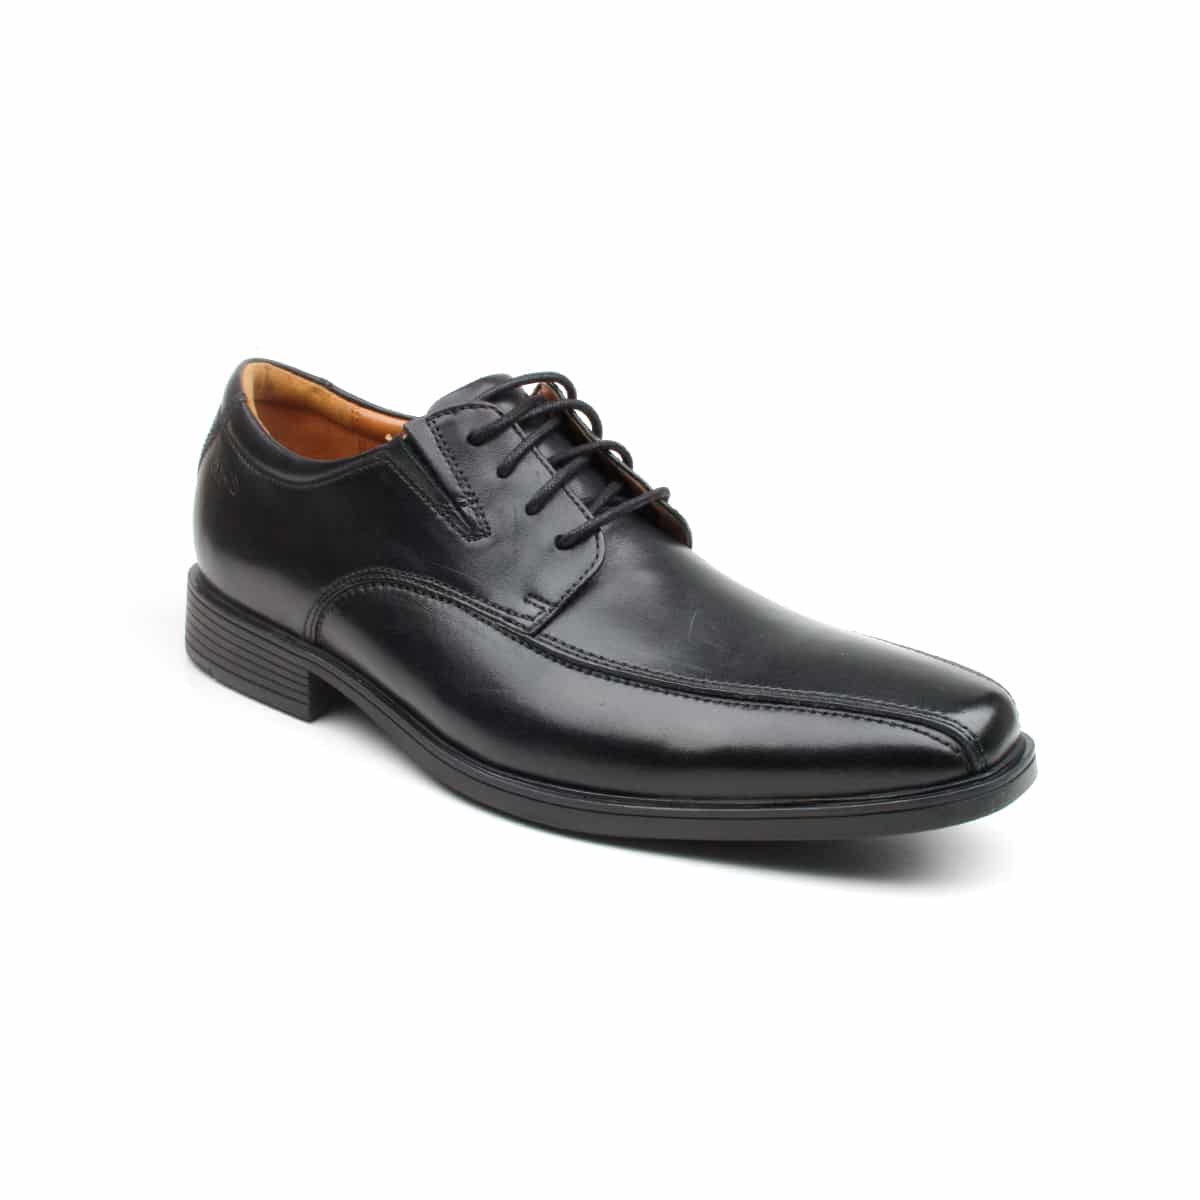 Clarks Tilden Walk Black Leather Premium Shoes - 121 Shoes